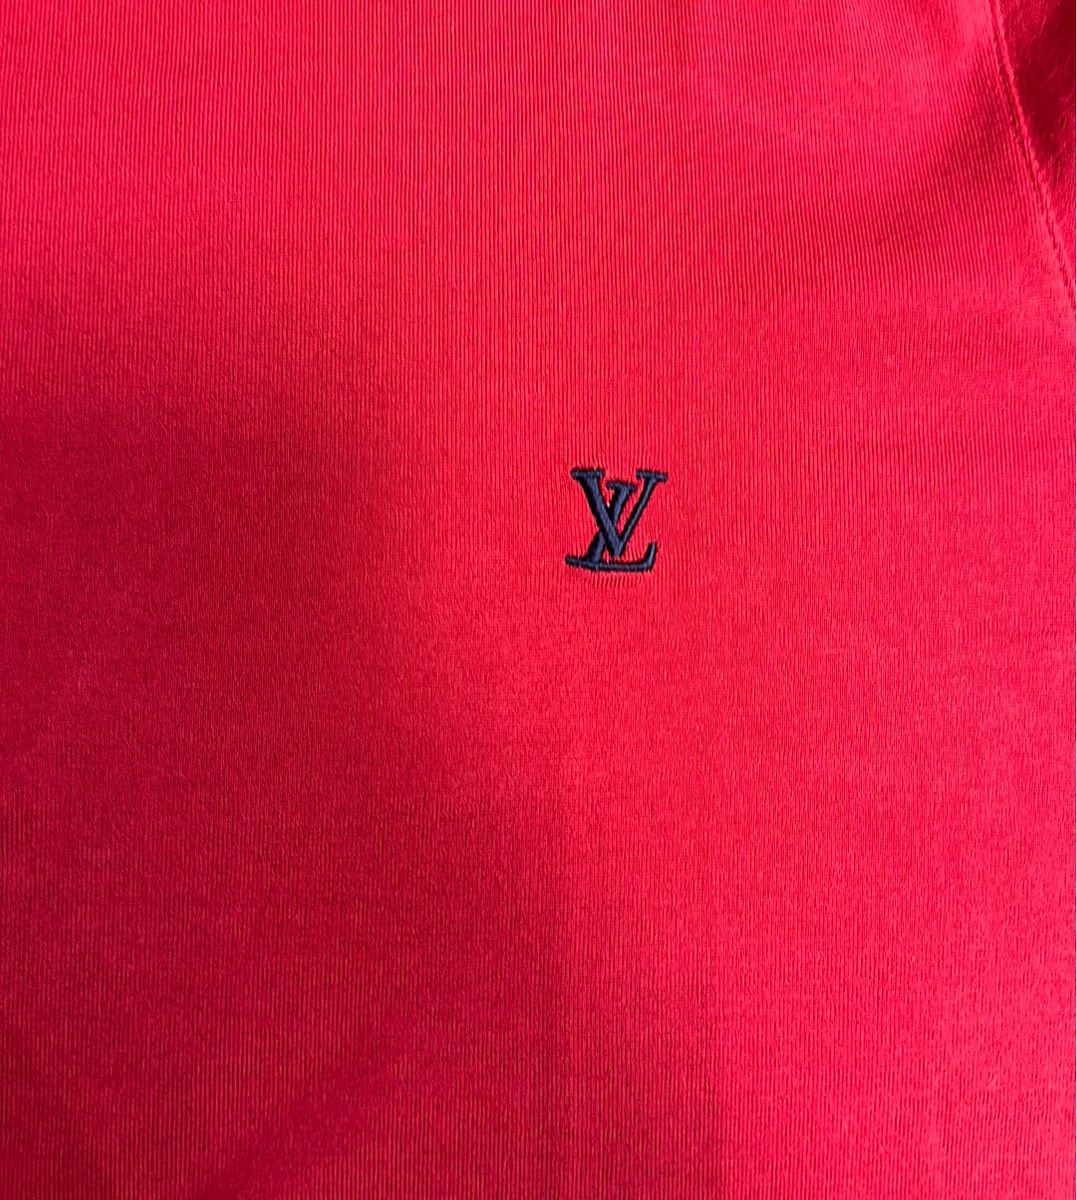 Camisa Louis Vuitton Multicolorida, Camiseta Masculina Louis Vuitton Usado  91708146